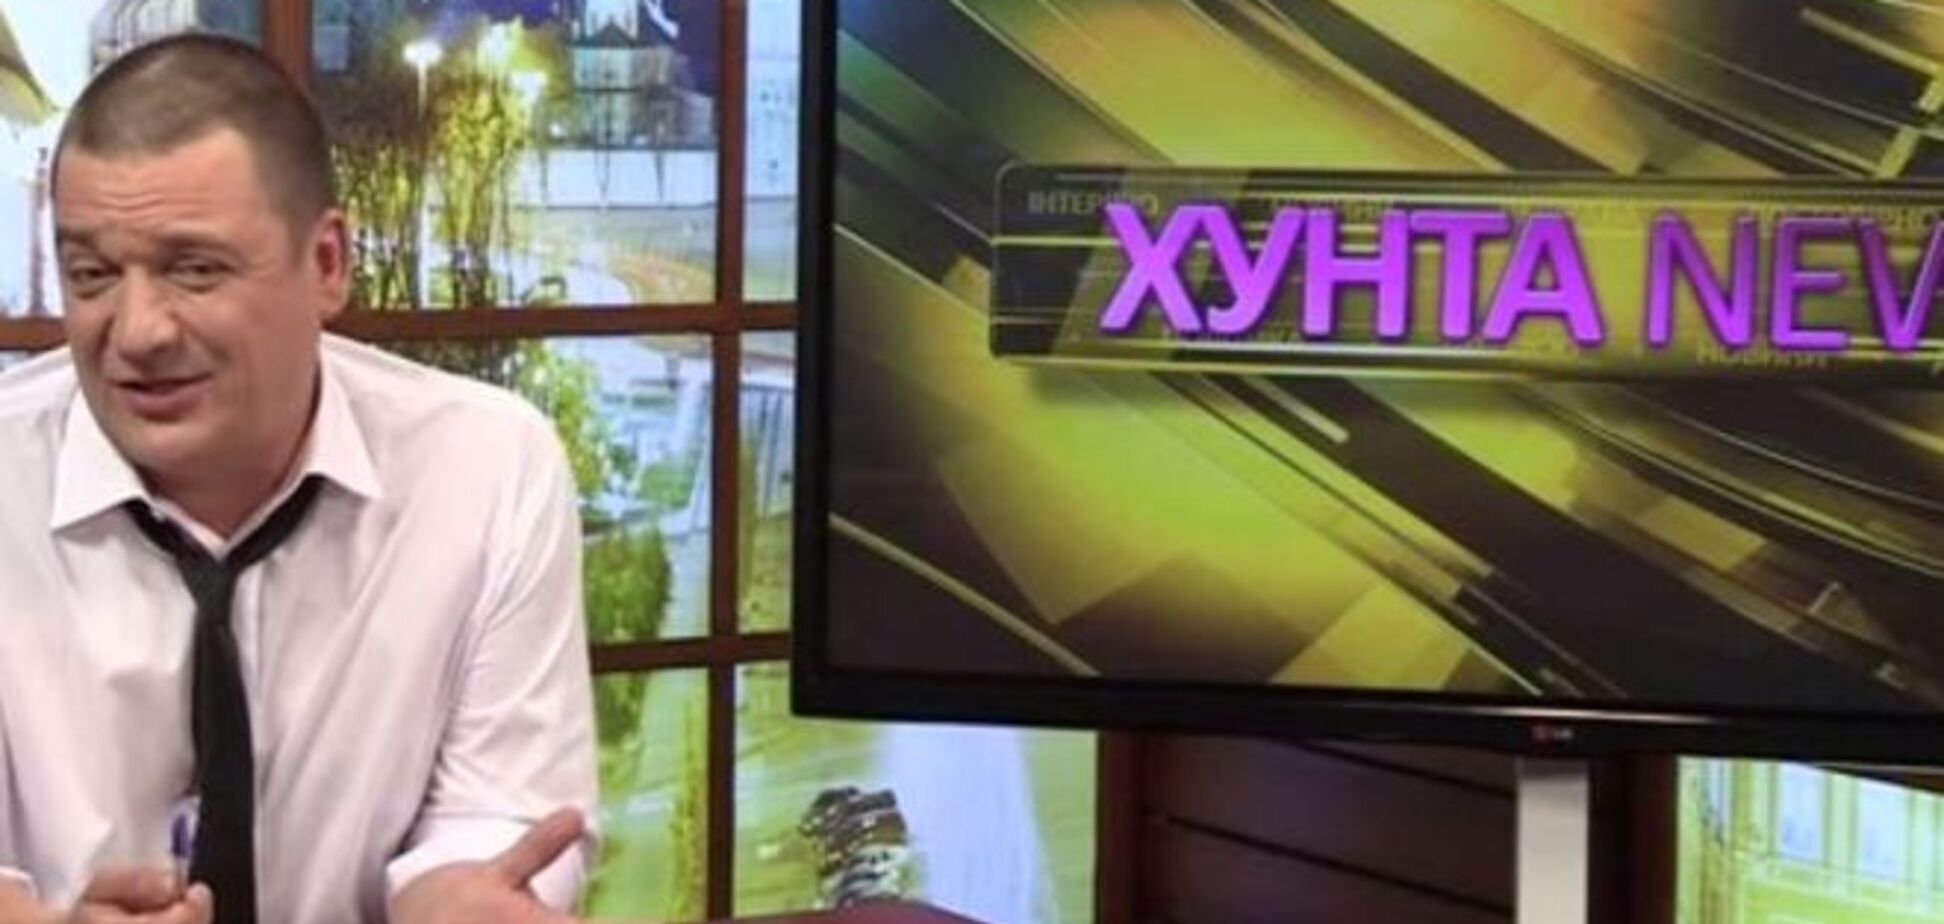 Хунта News затролив уболівальників 'Динамо': відео глузування